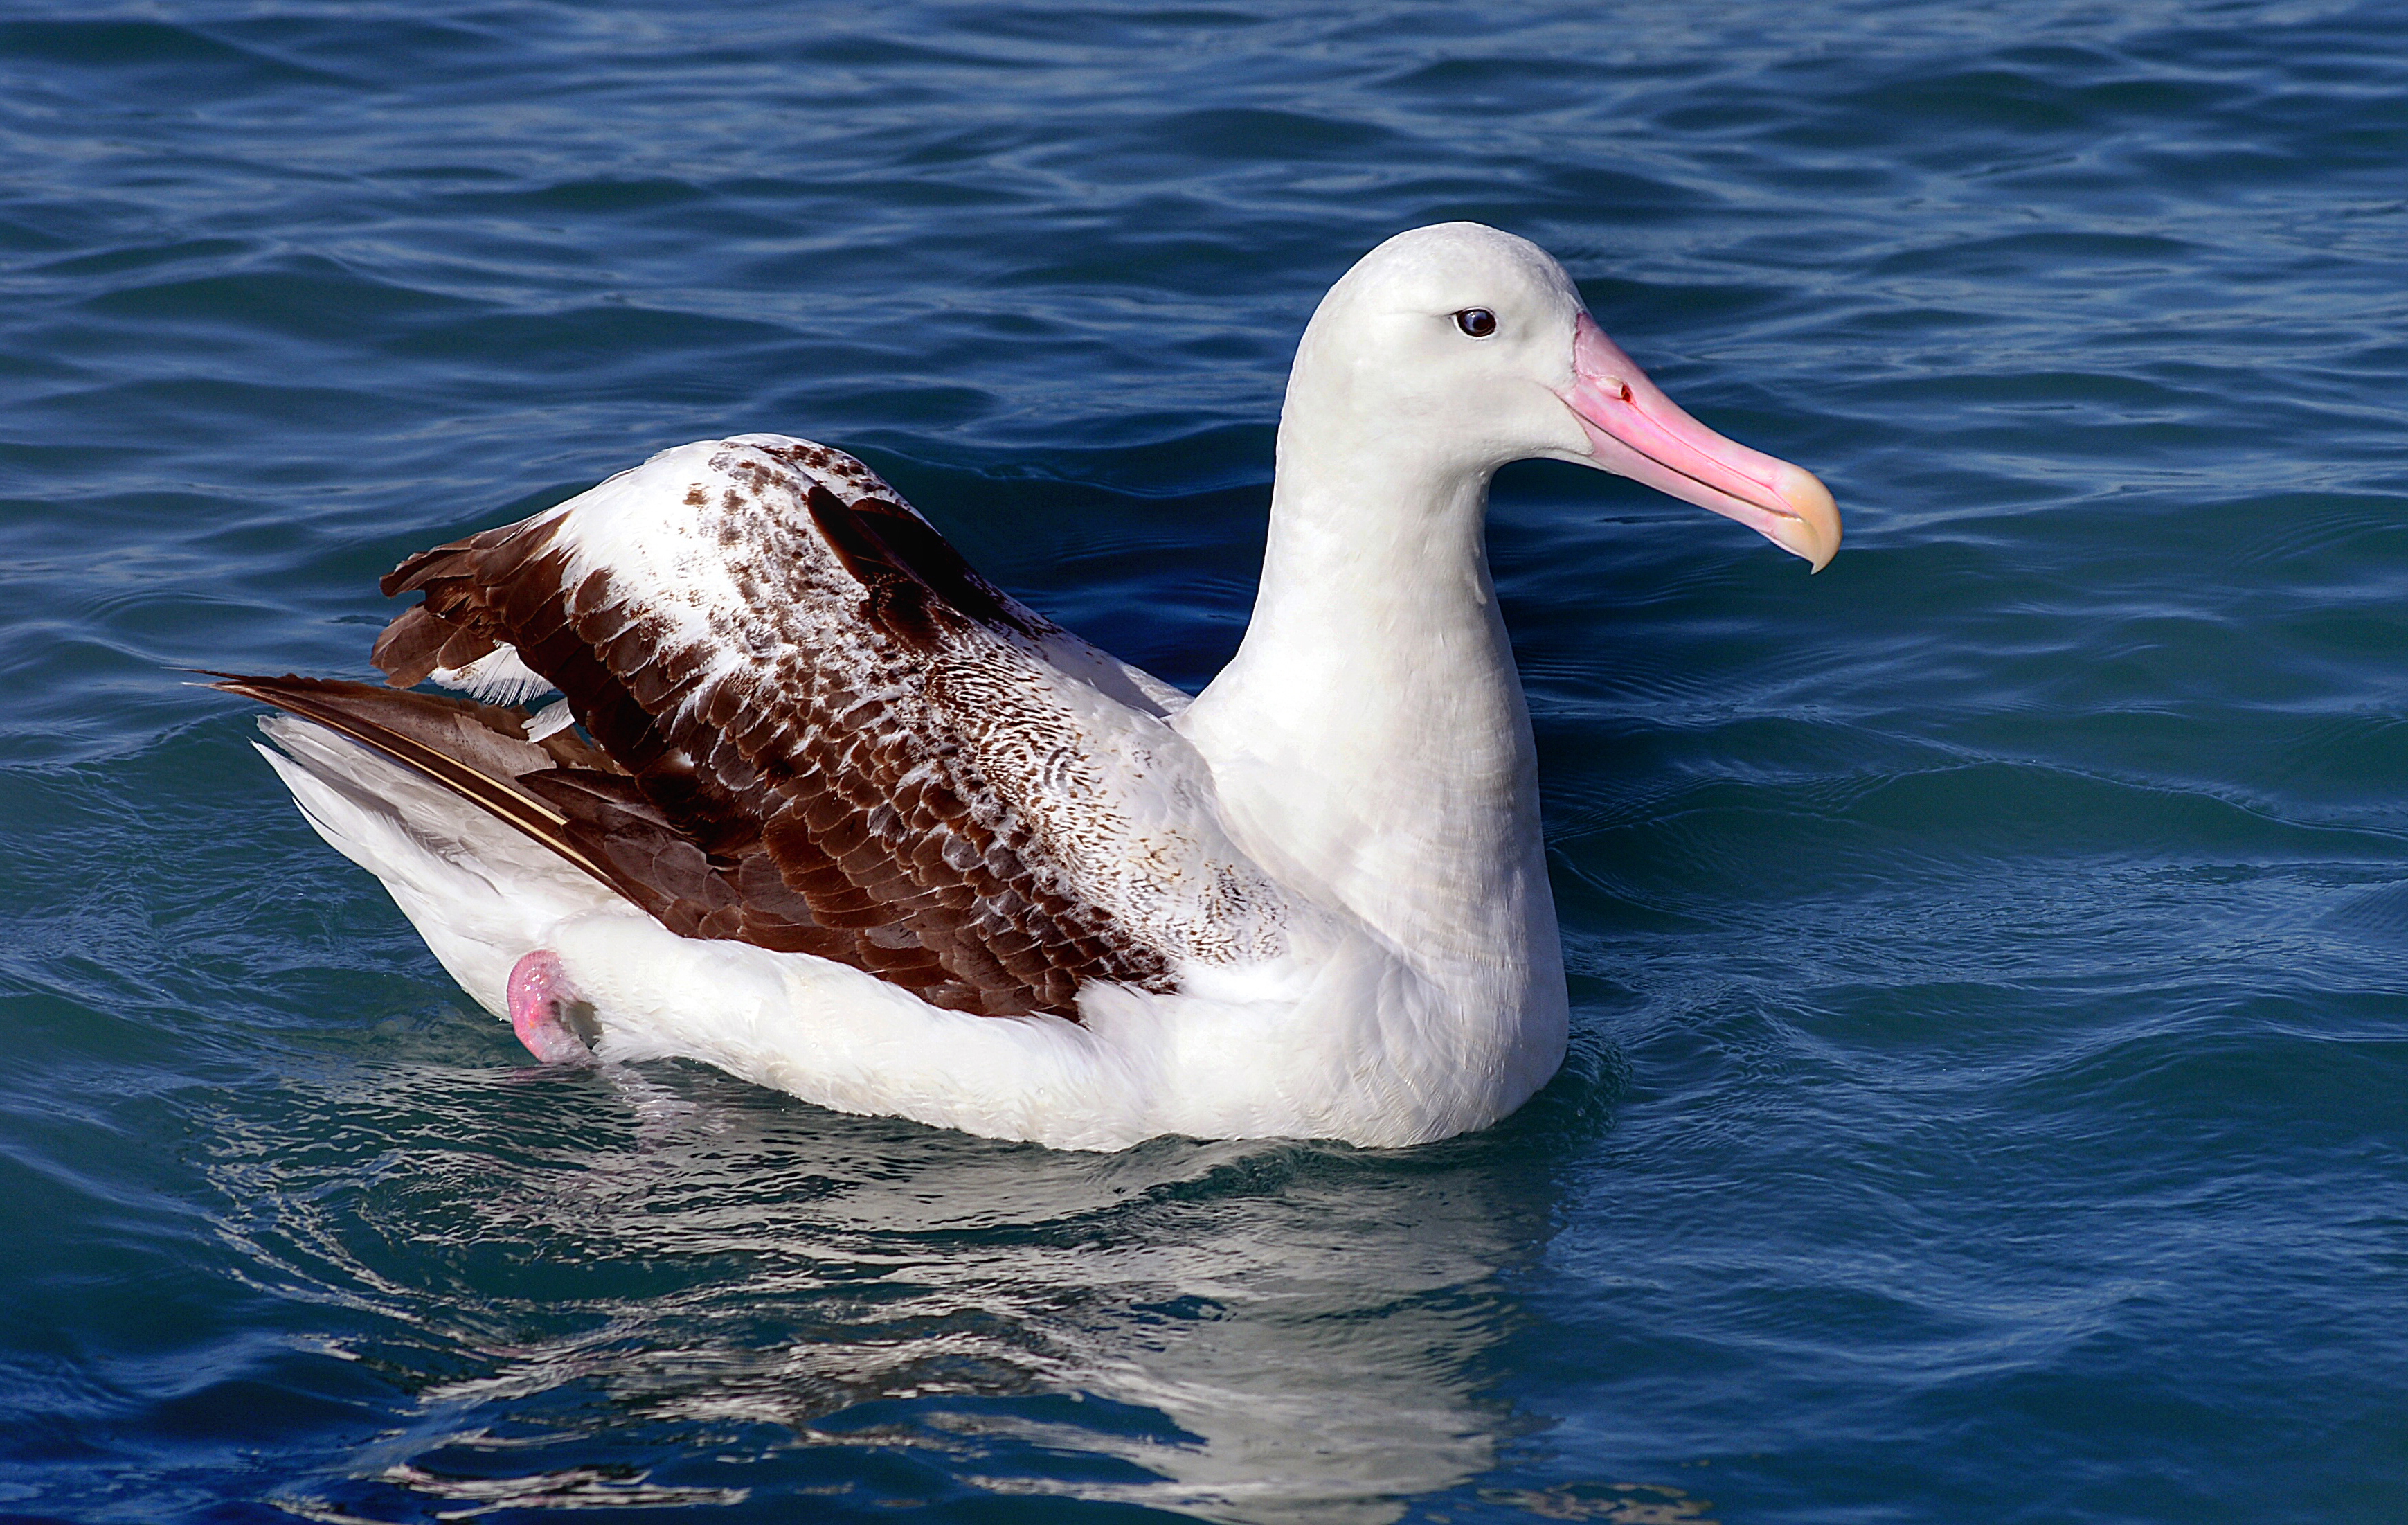 Meet the wandering albatross